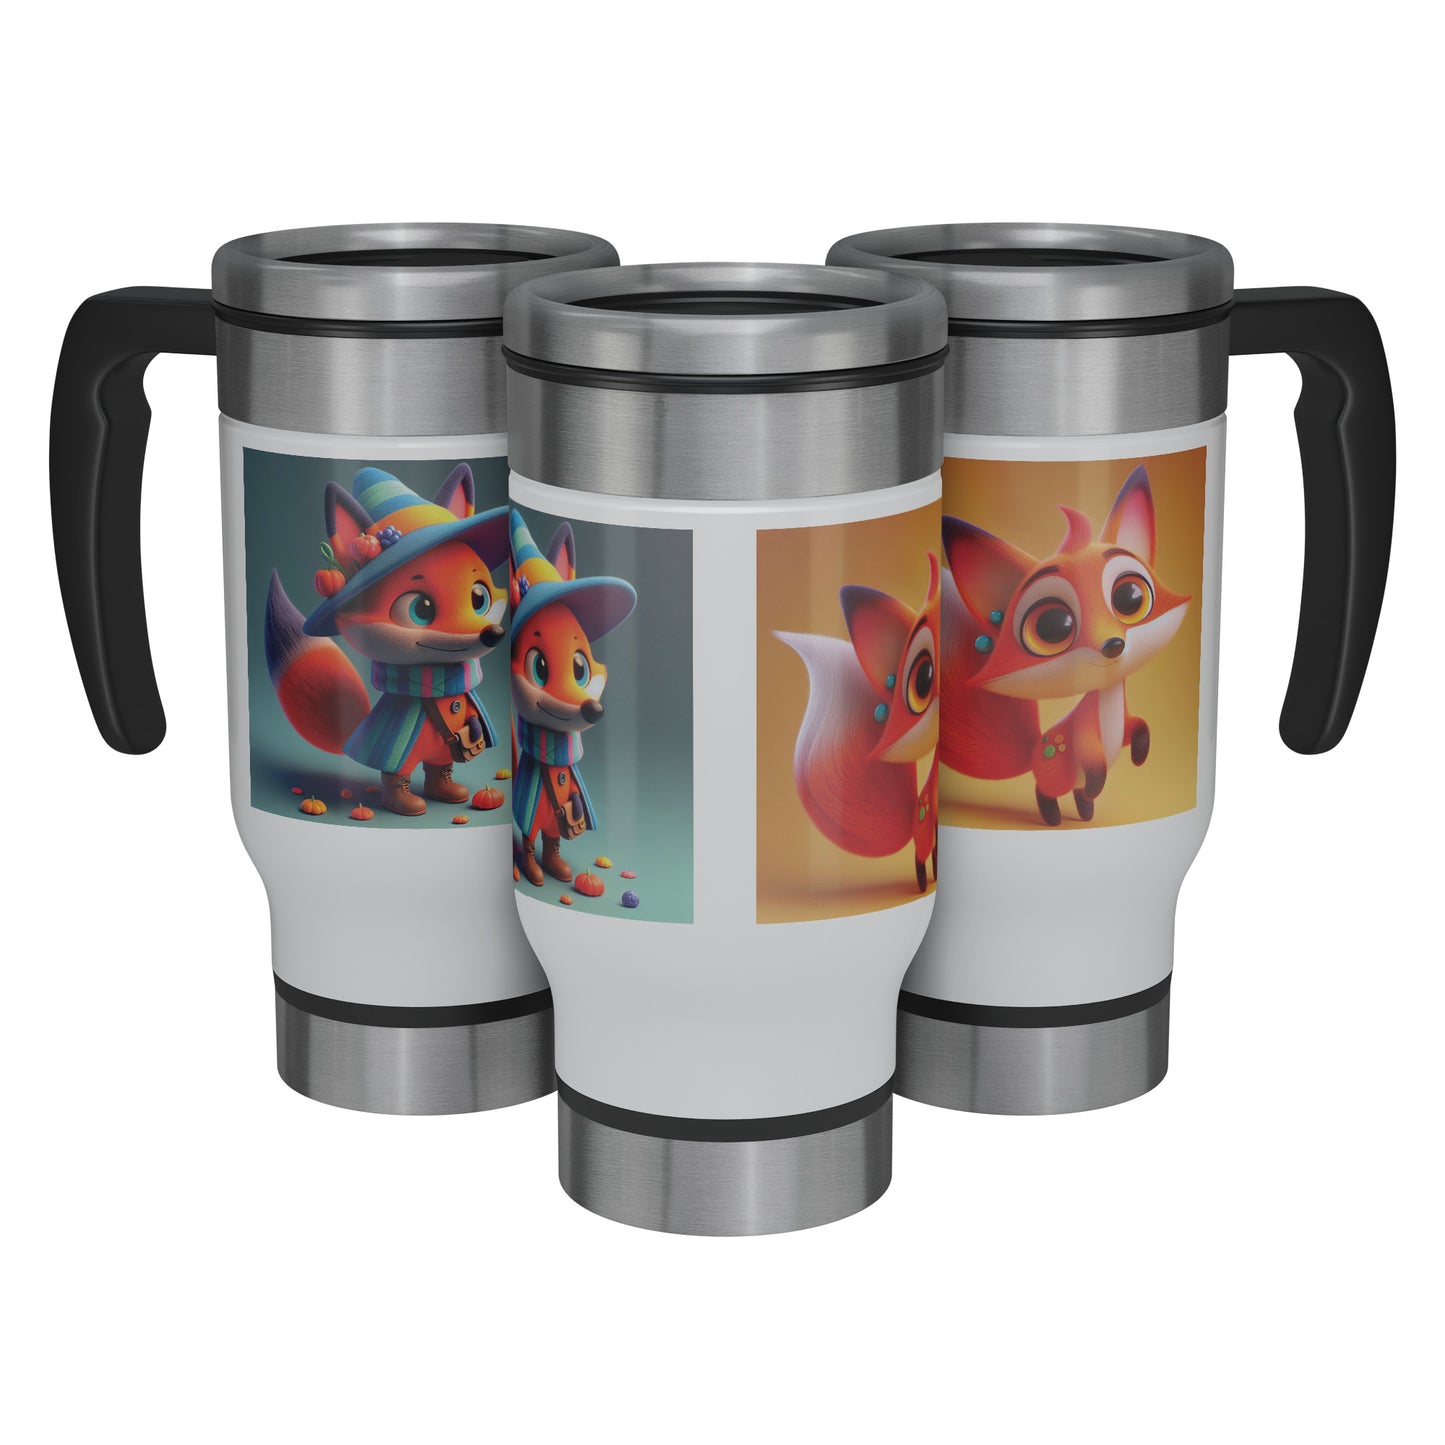 Cute & Adorable Mammals - 14oz Travel Mug - Fox #1